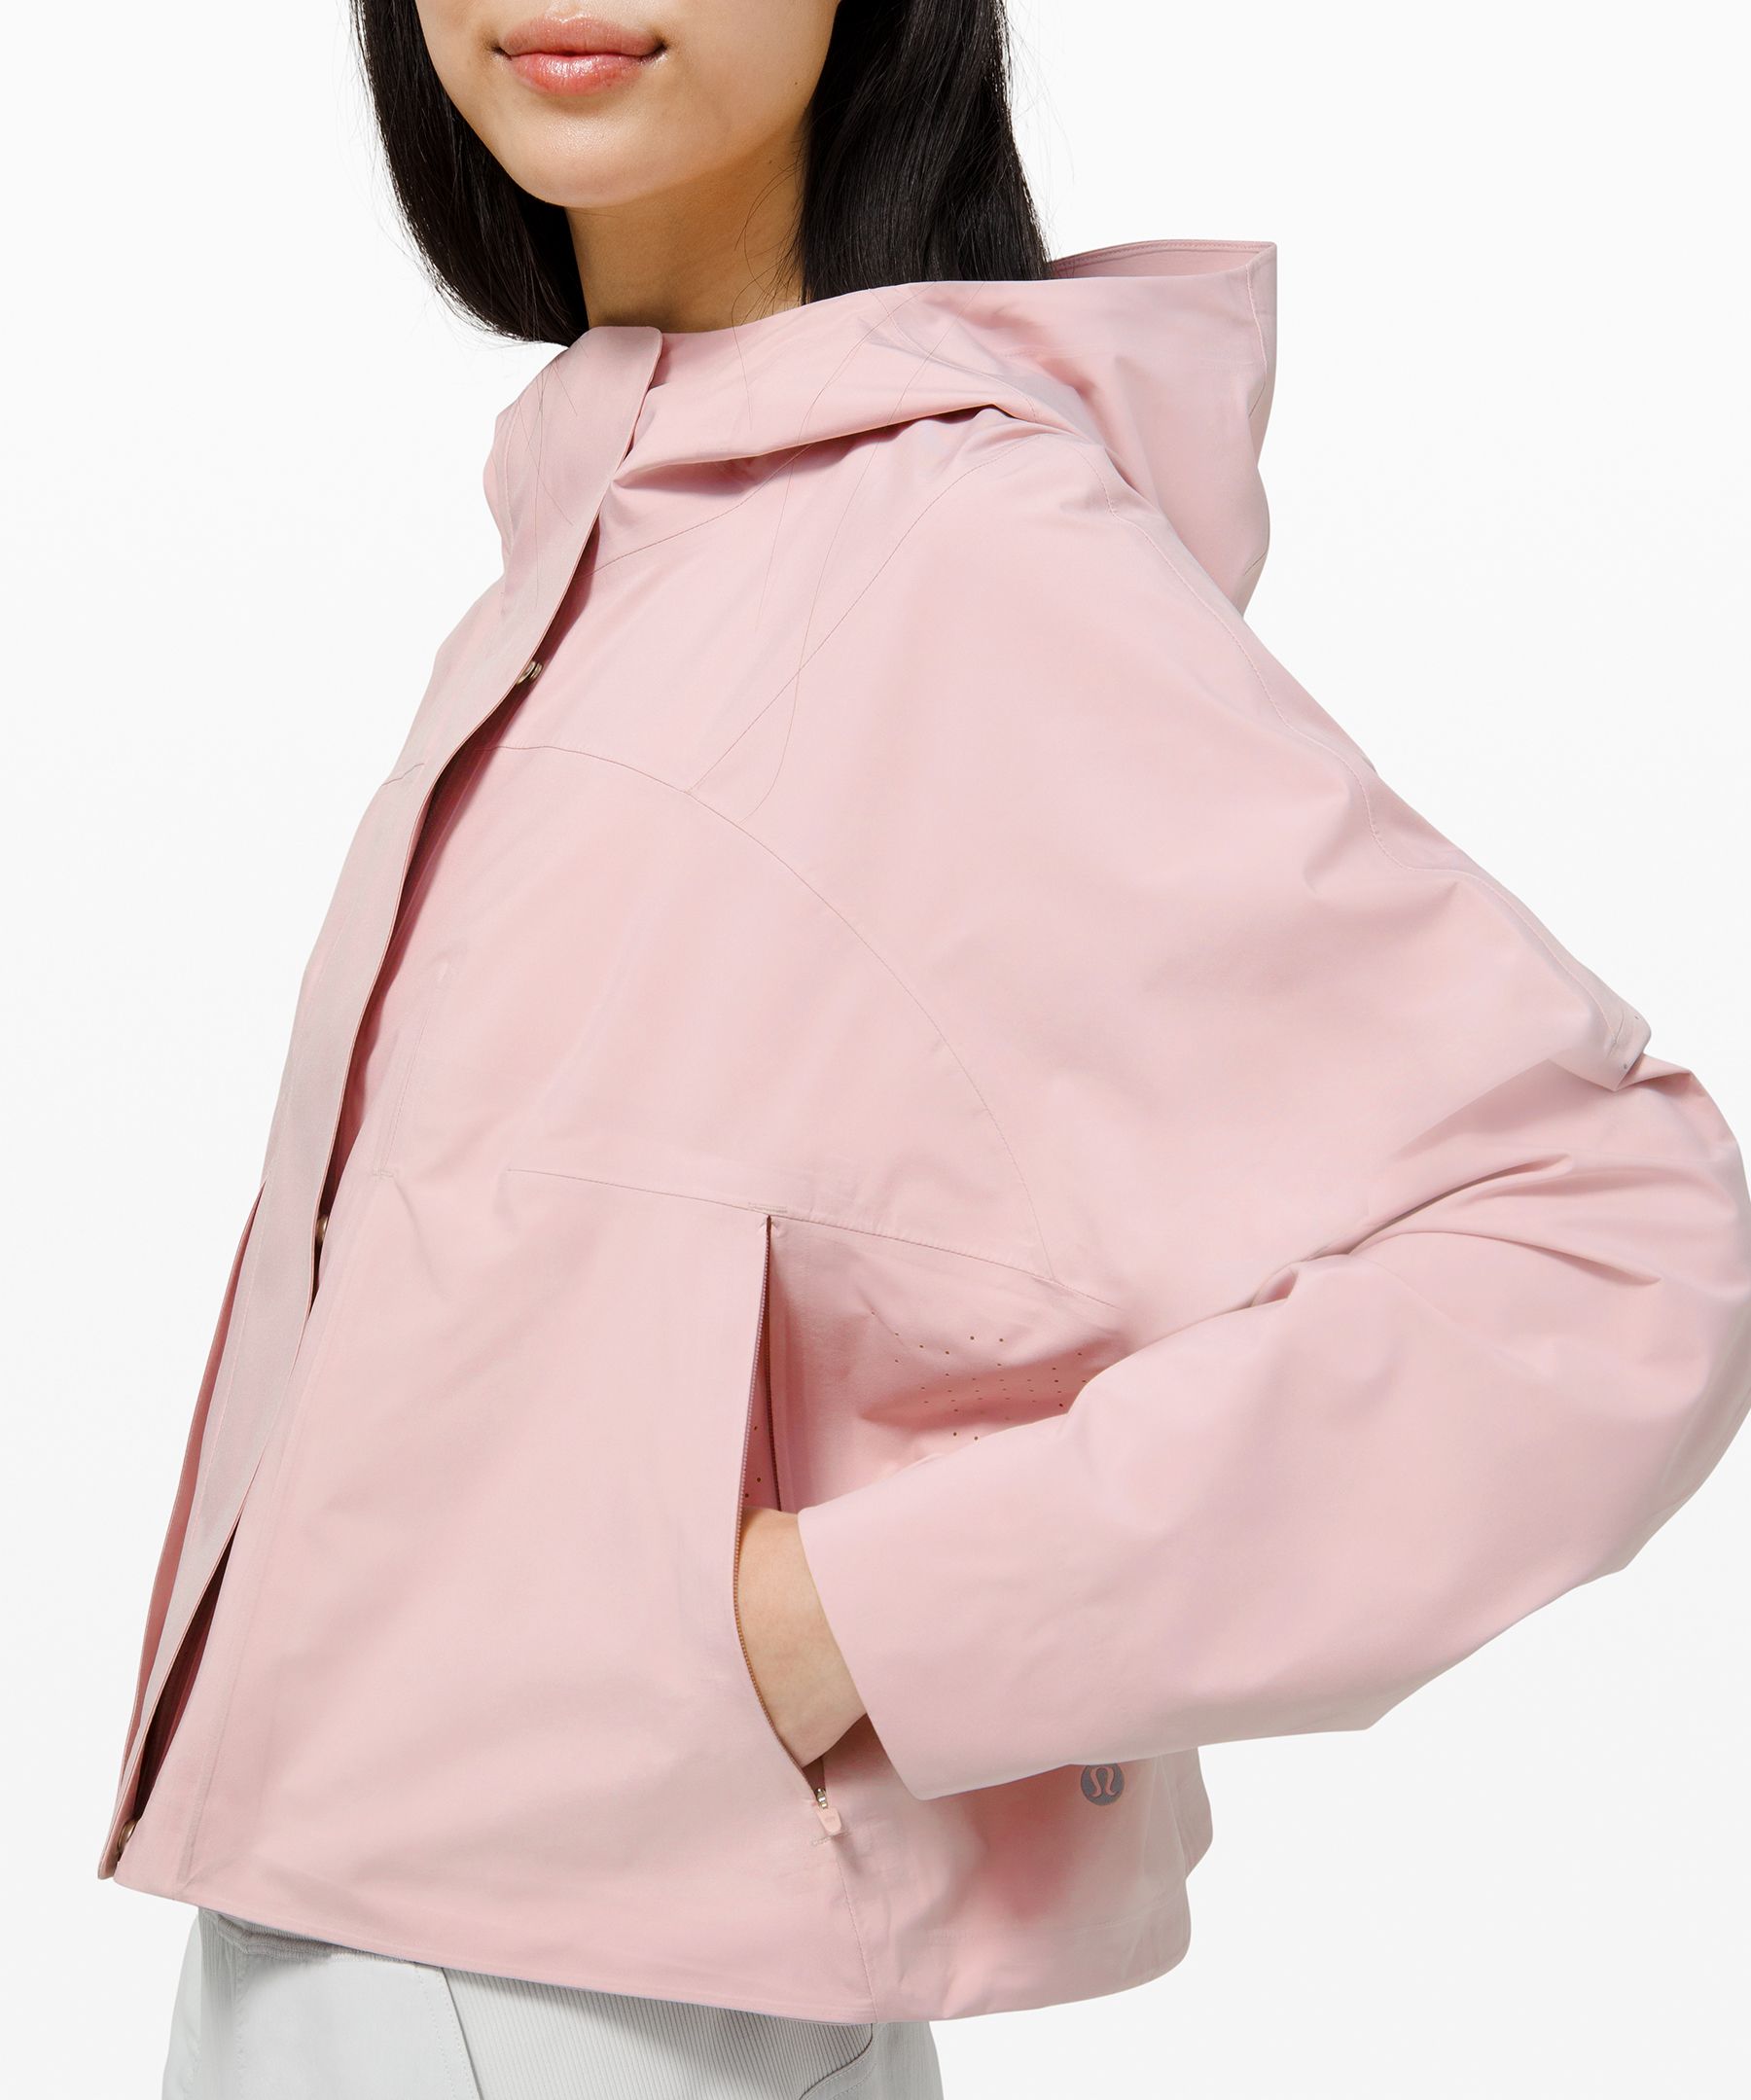 rain seeker jacket lululemon